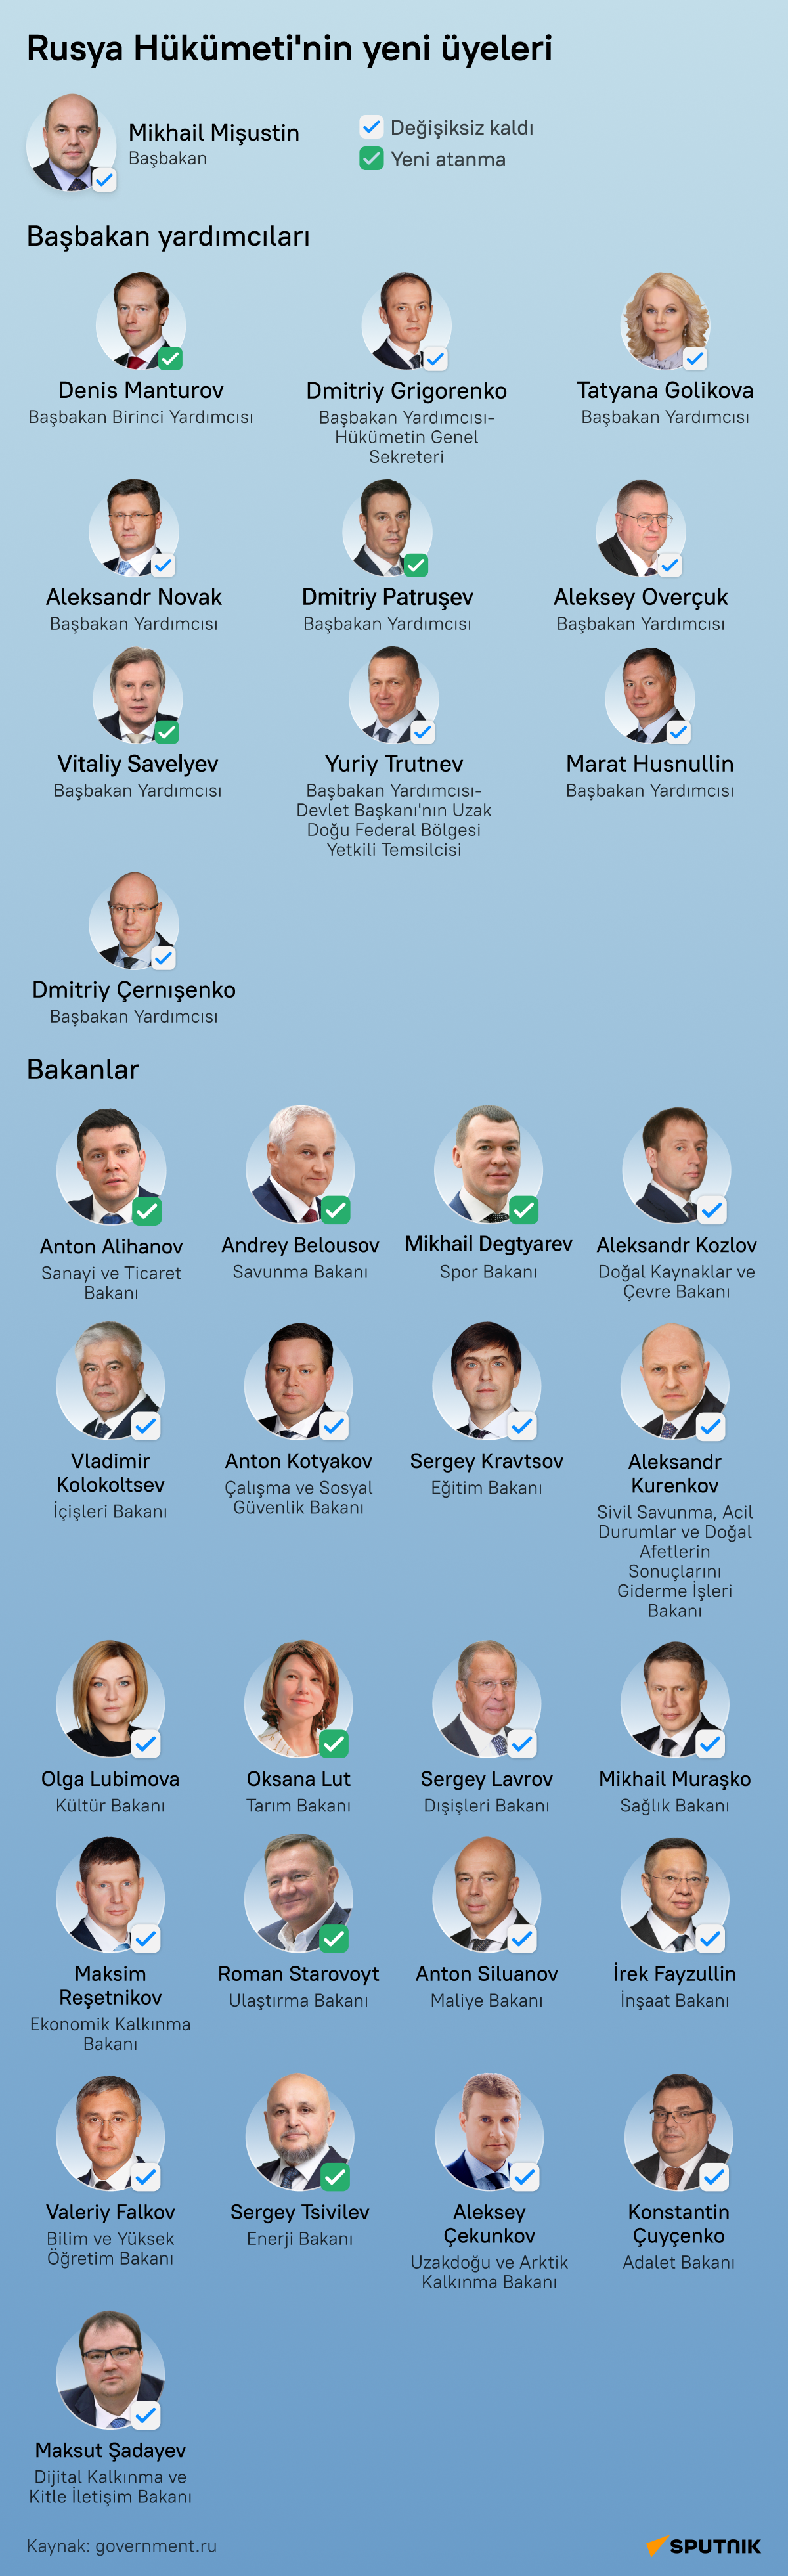 Rusya'nın yeni hükümetinde başbakan yardımcısı ve bakan olarak görev yapacak isimler  infografik - Sputnik Türkiye